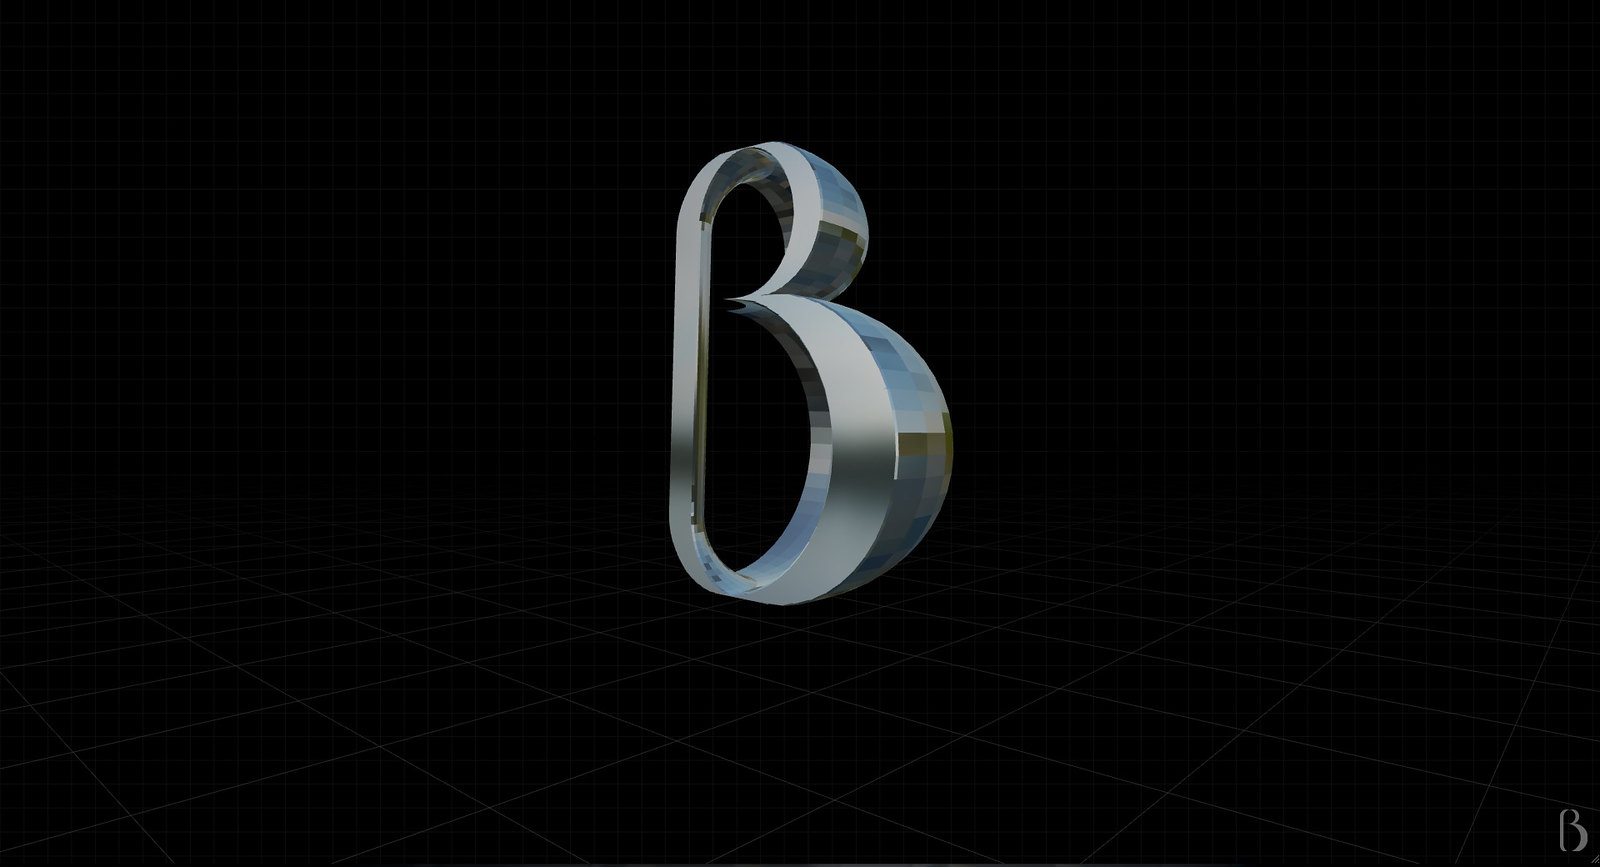 Gramapoética - letra "B"